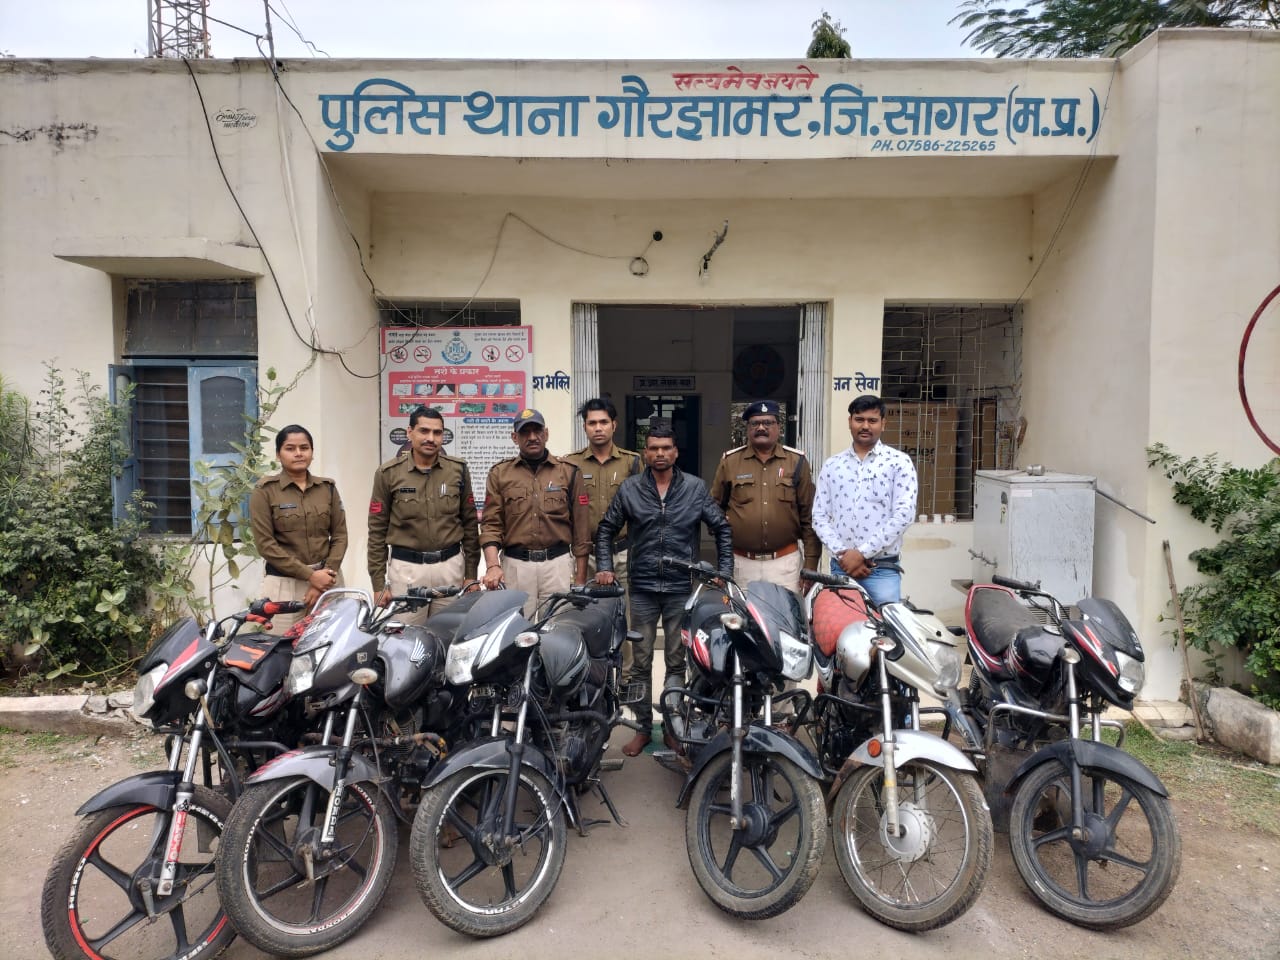 गौरझामर पुलिस ने फरार आरोपी को गिरफ्तार कर उसके पास से 6 चोरी की मोटरसाइकिलें की बरामद | New India Times